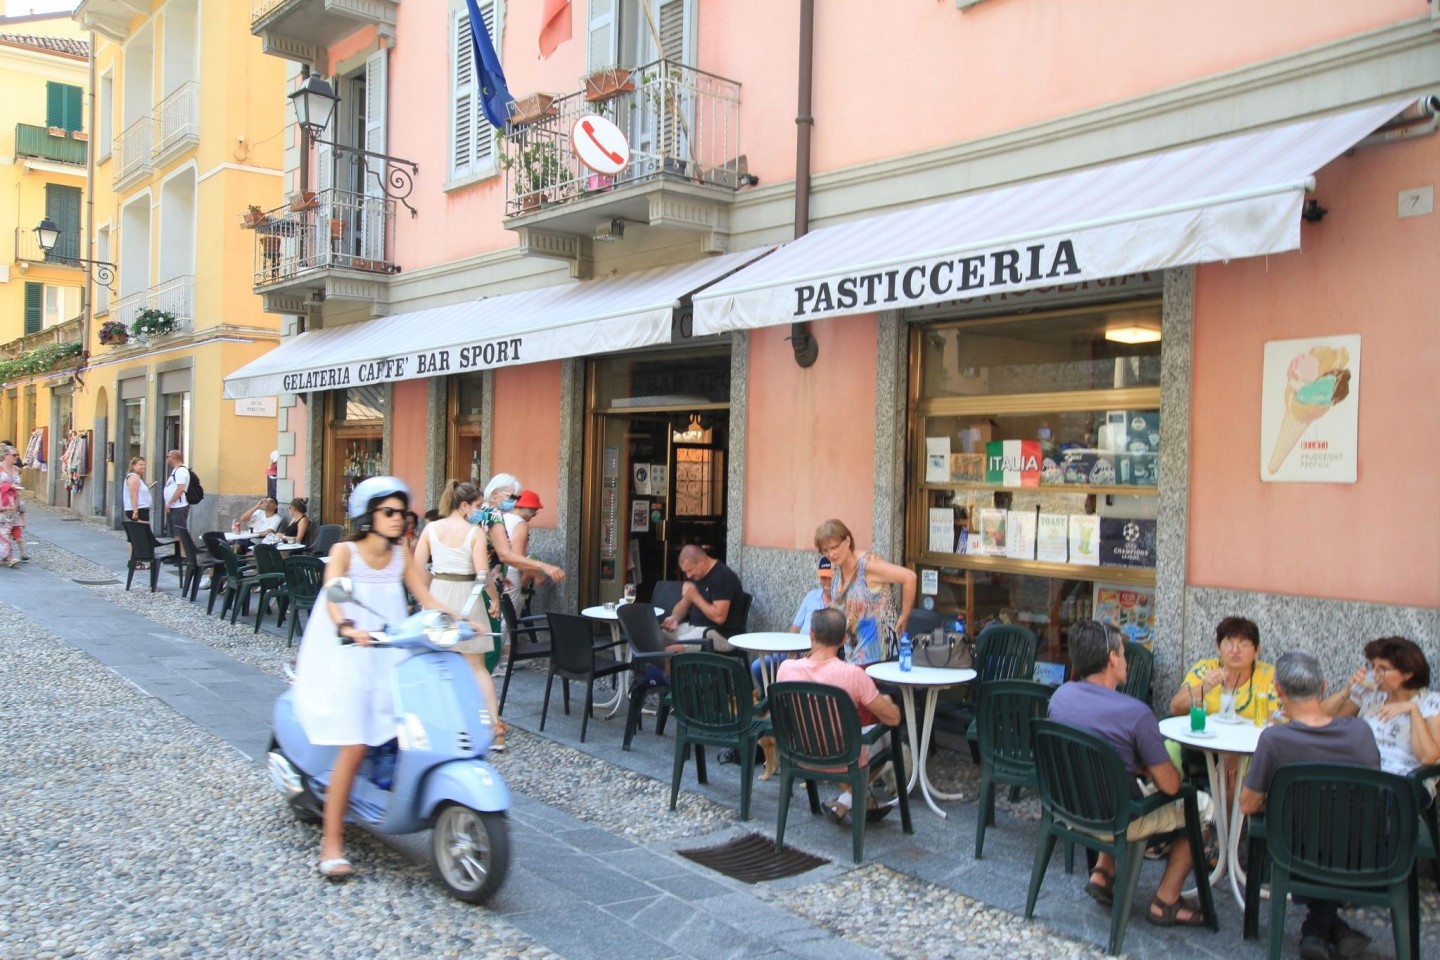 In Italien gibt es viele Stände und Cafés, die Eiscreme anbieten - allerdings zu einem höheren Preis als zuvor. (Symbolbild)